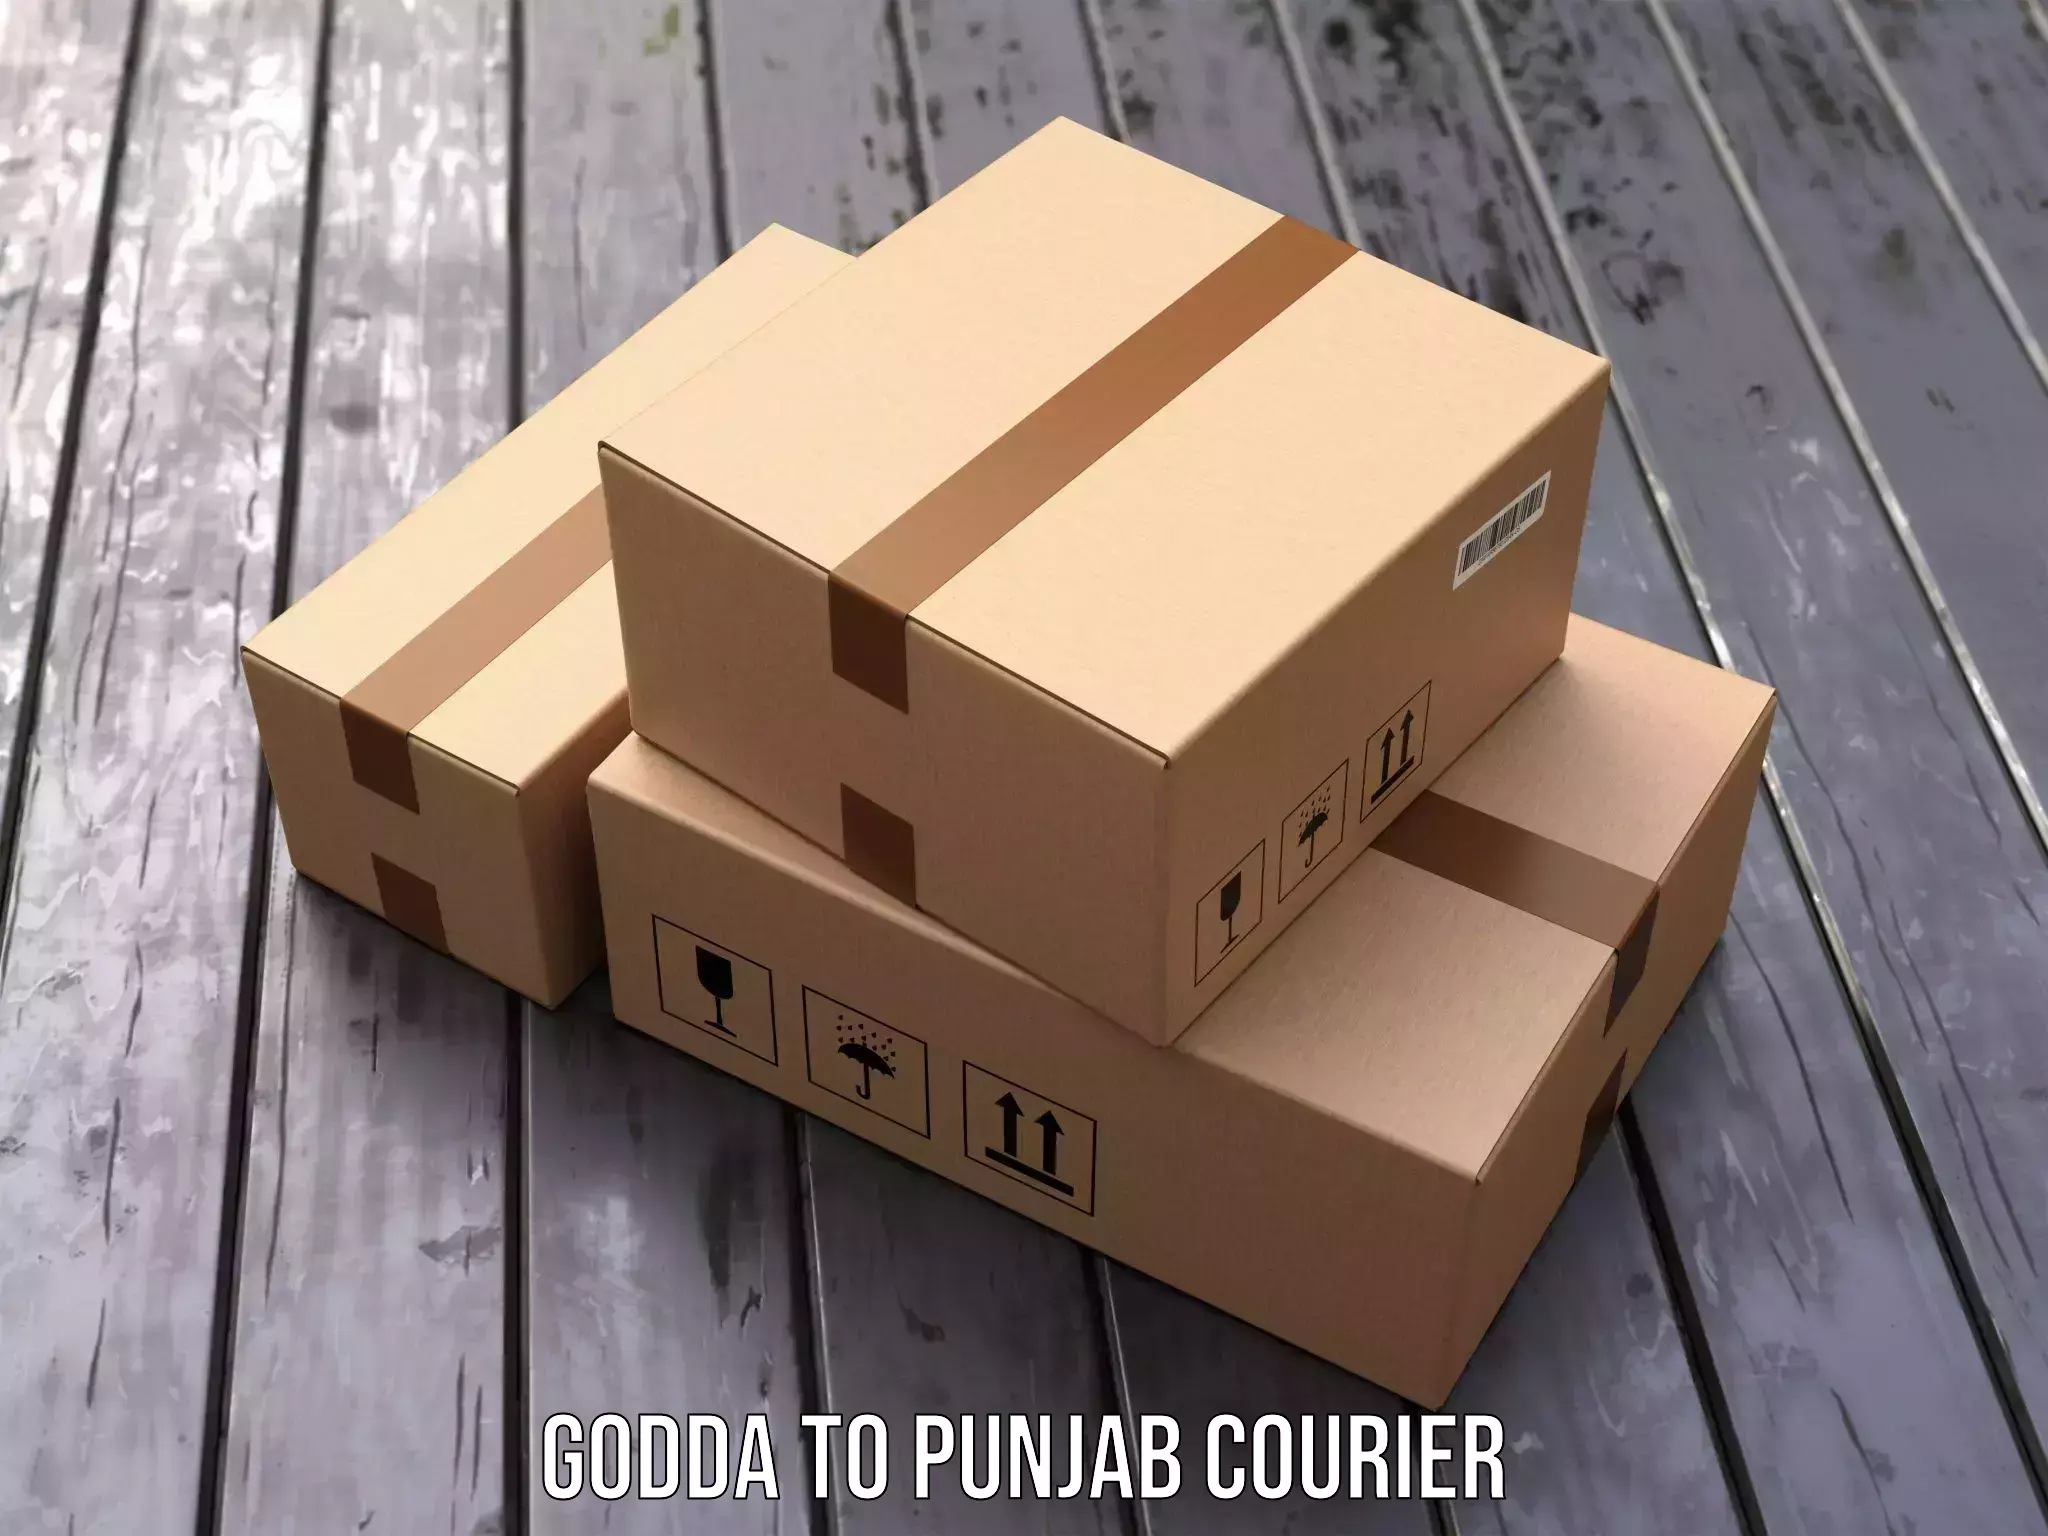 Multi-national courier services Godda to Garhshankar